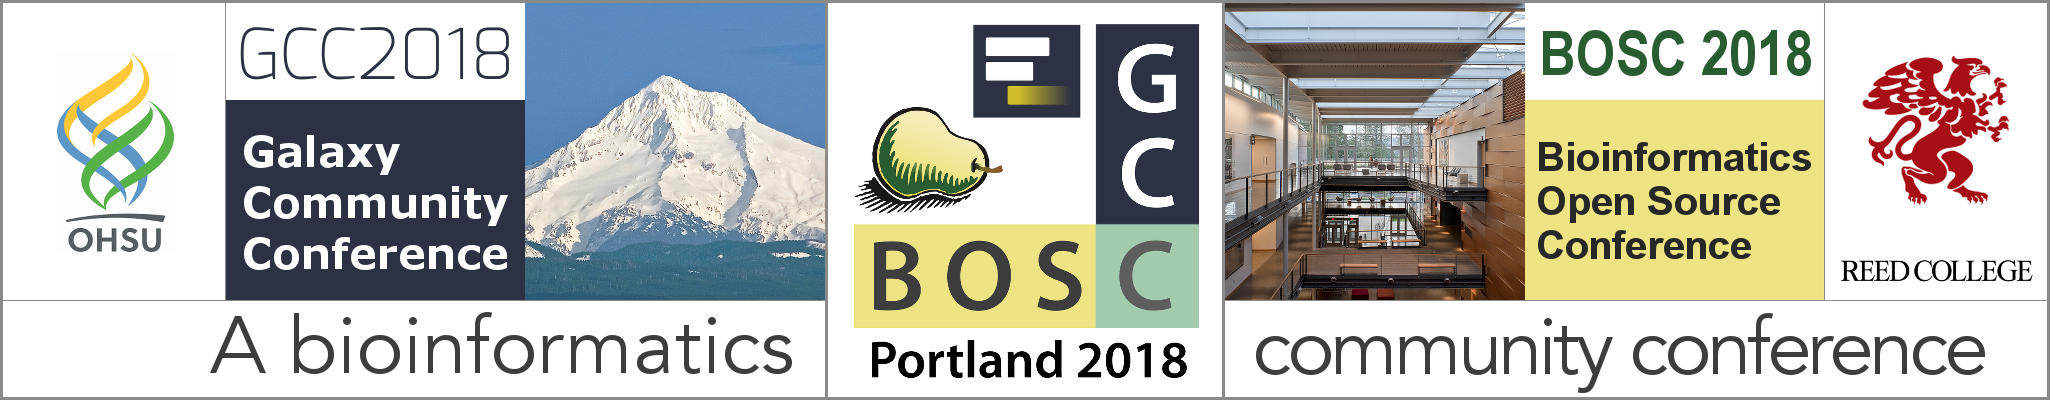 GCC2018 + BOSC 2018: The Bioinformatics Community Conference